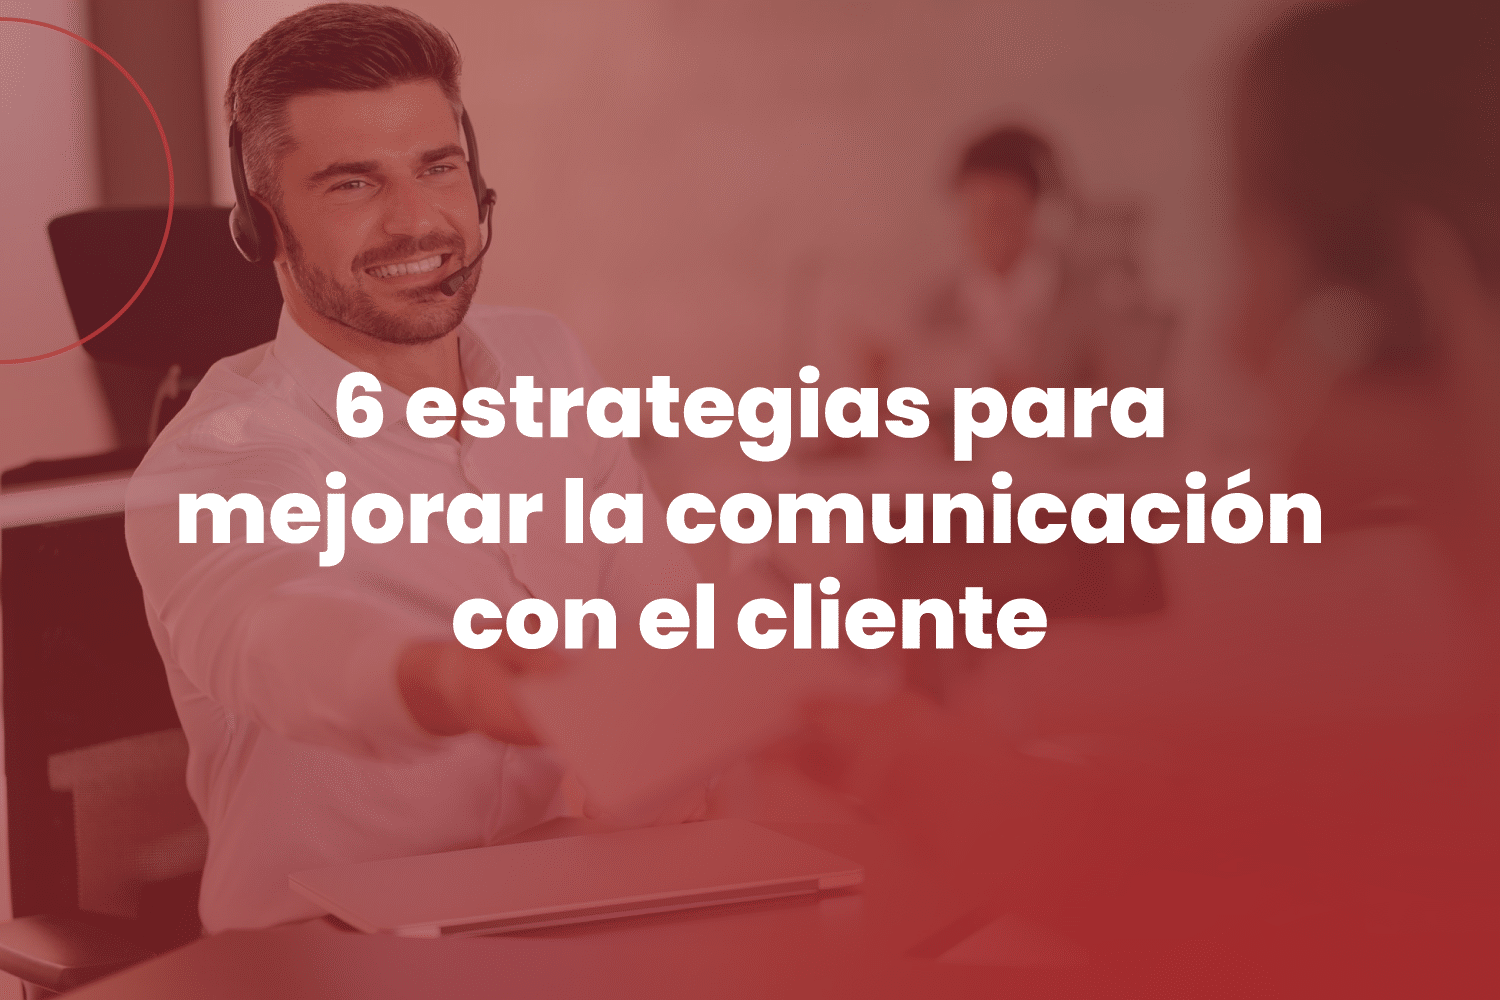 6 estrategias para mejorar la comunicación con el cliente